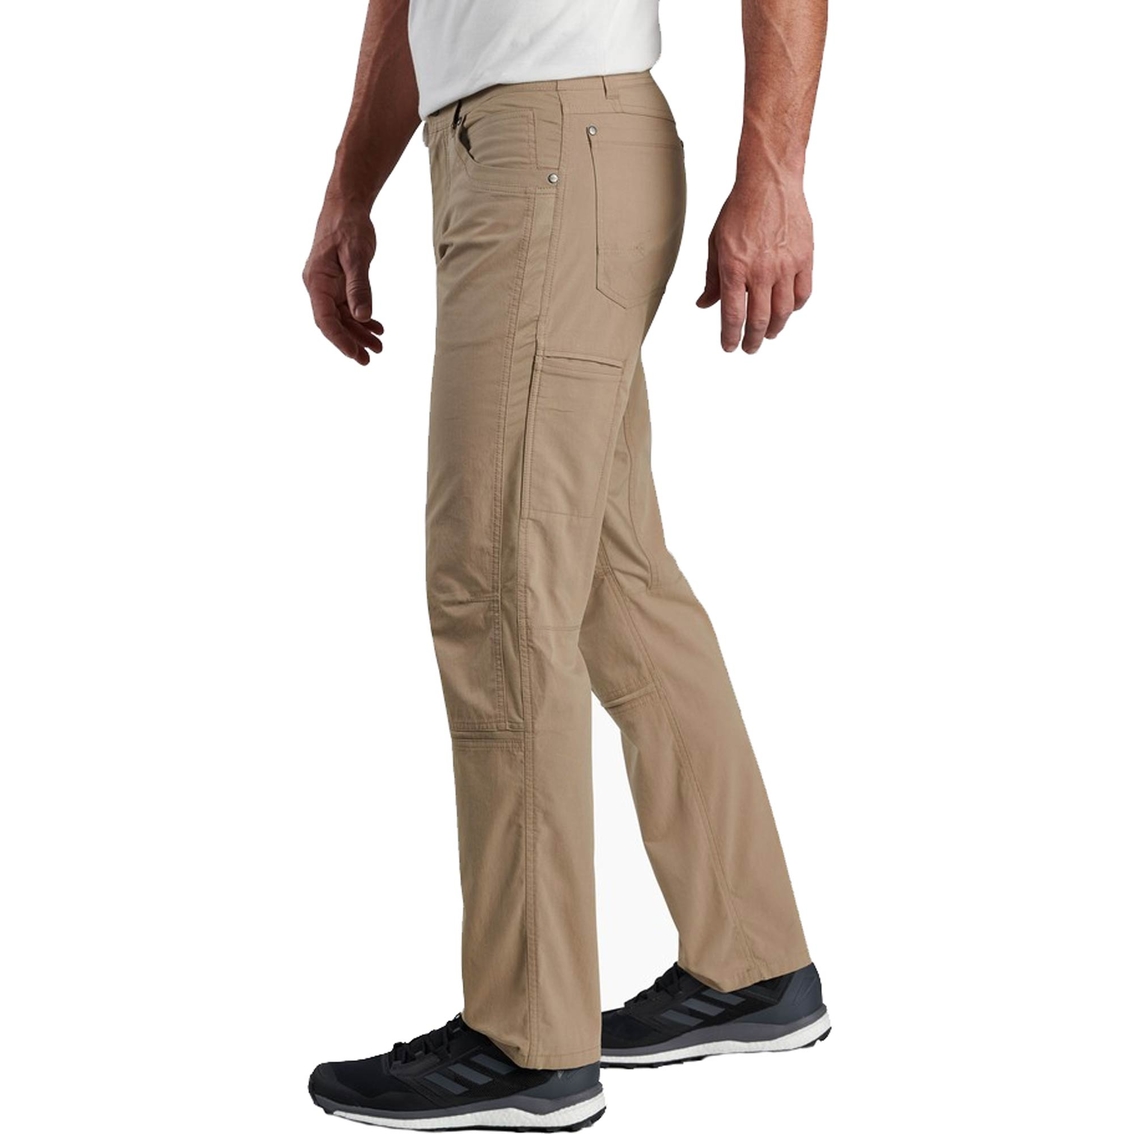 Kuhl Men's Radikl Pants - Image 4 of 4